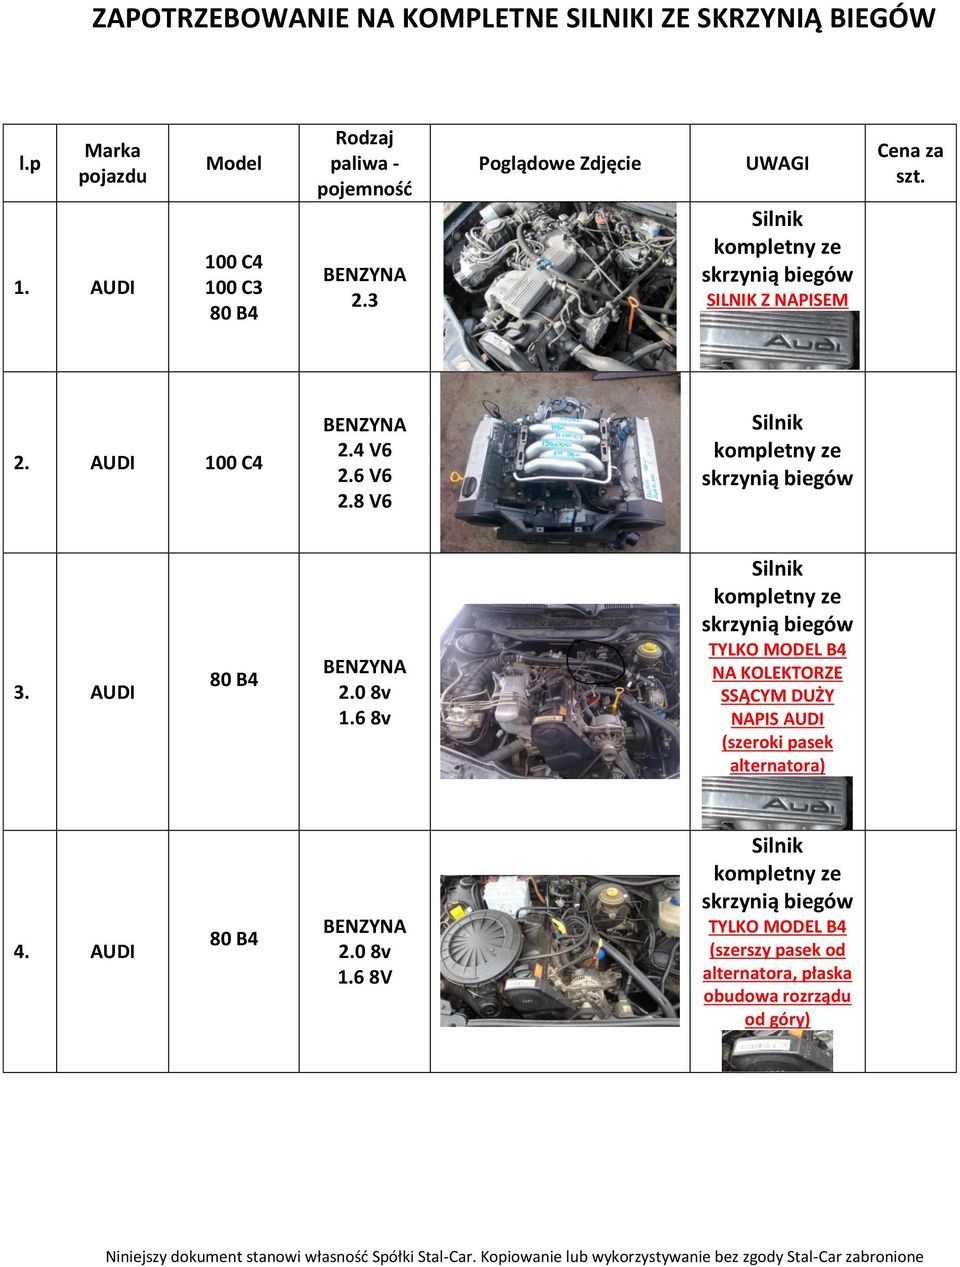 3 Poglądowe Zdjęcie UWAGI ILNIK Z NAPIEM Cena za szt. 2. AUDI 100 C4 2.4 V6 2.6 V6 2.8 V6 3.